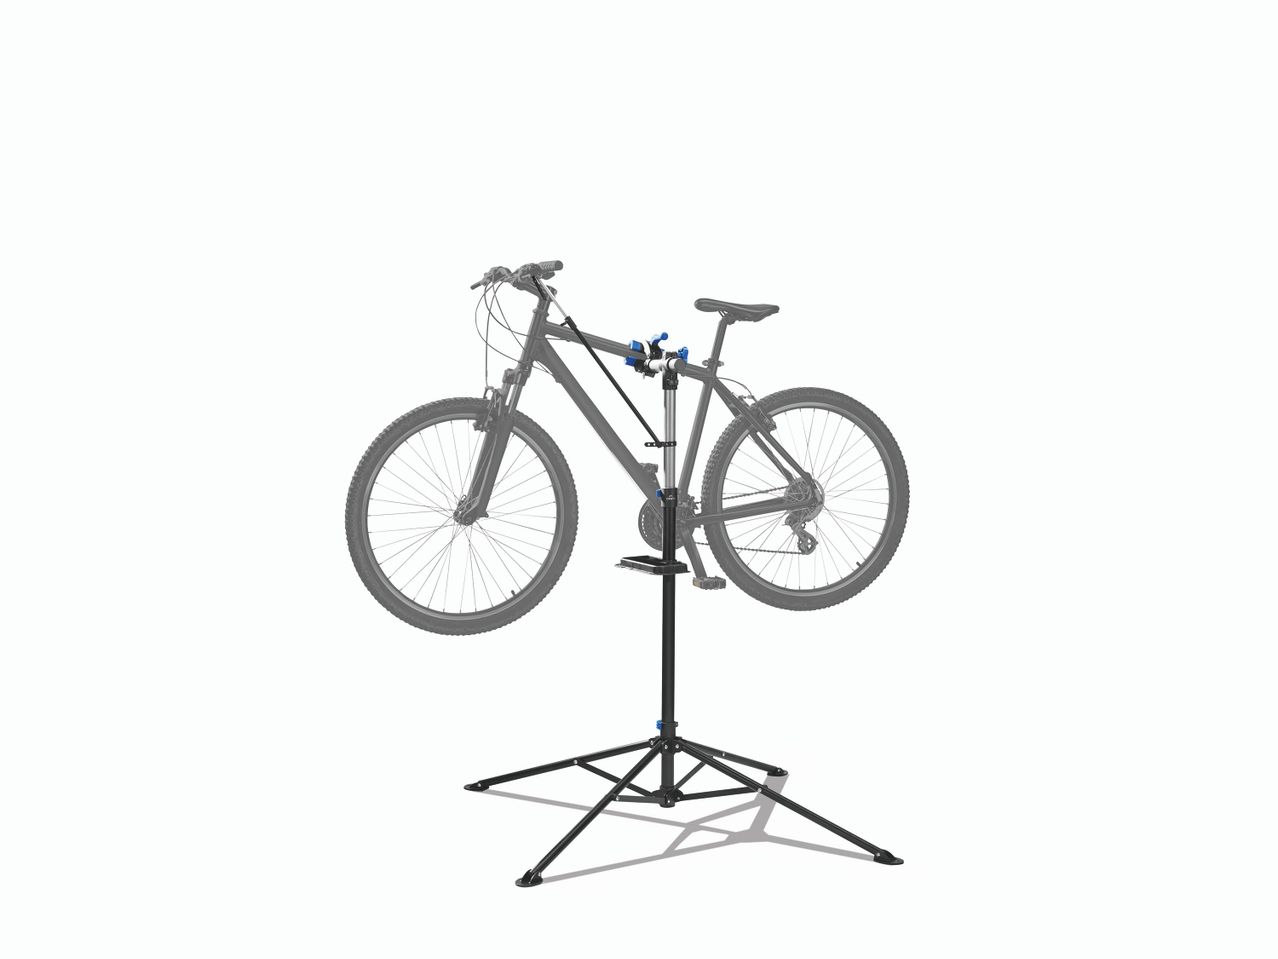 Pied d&apos;atelier pour vélo , prezzo 29.99 EUR 
Pied d&apos;atelier ...